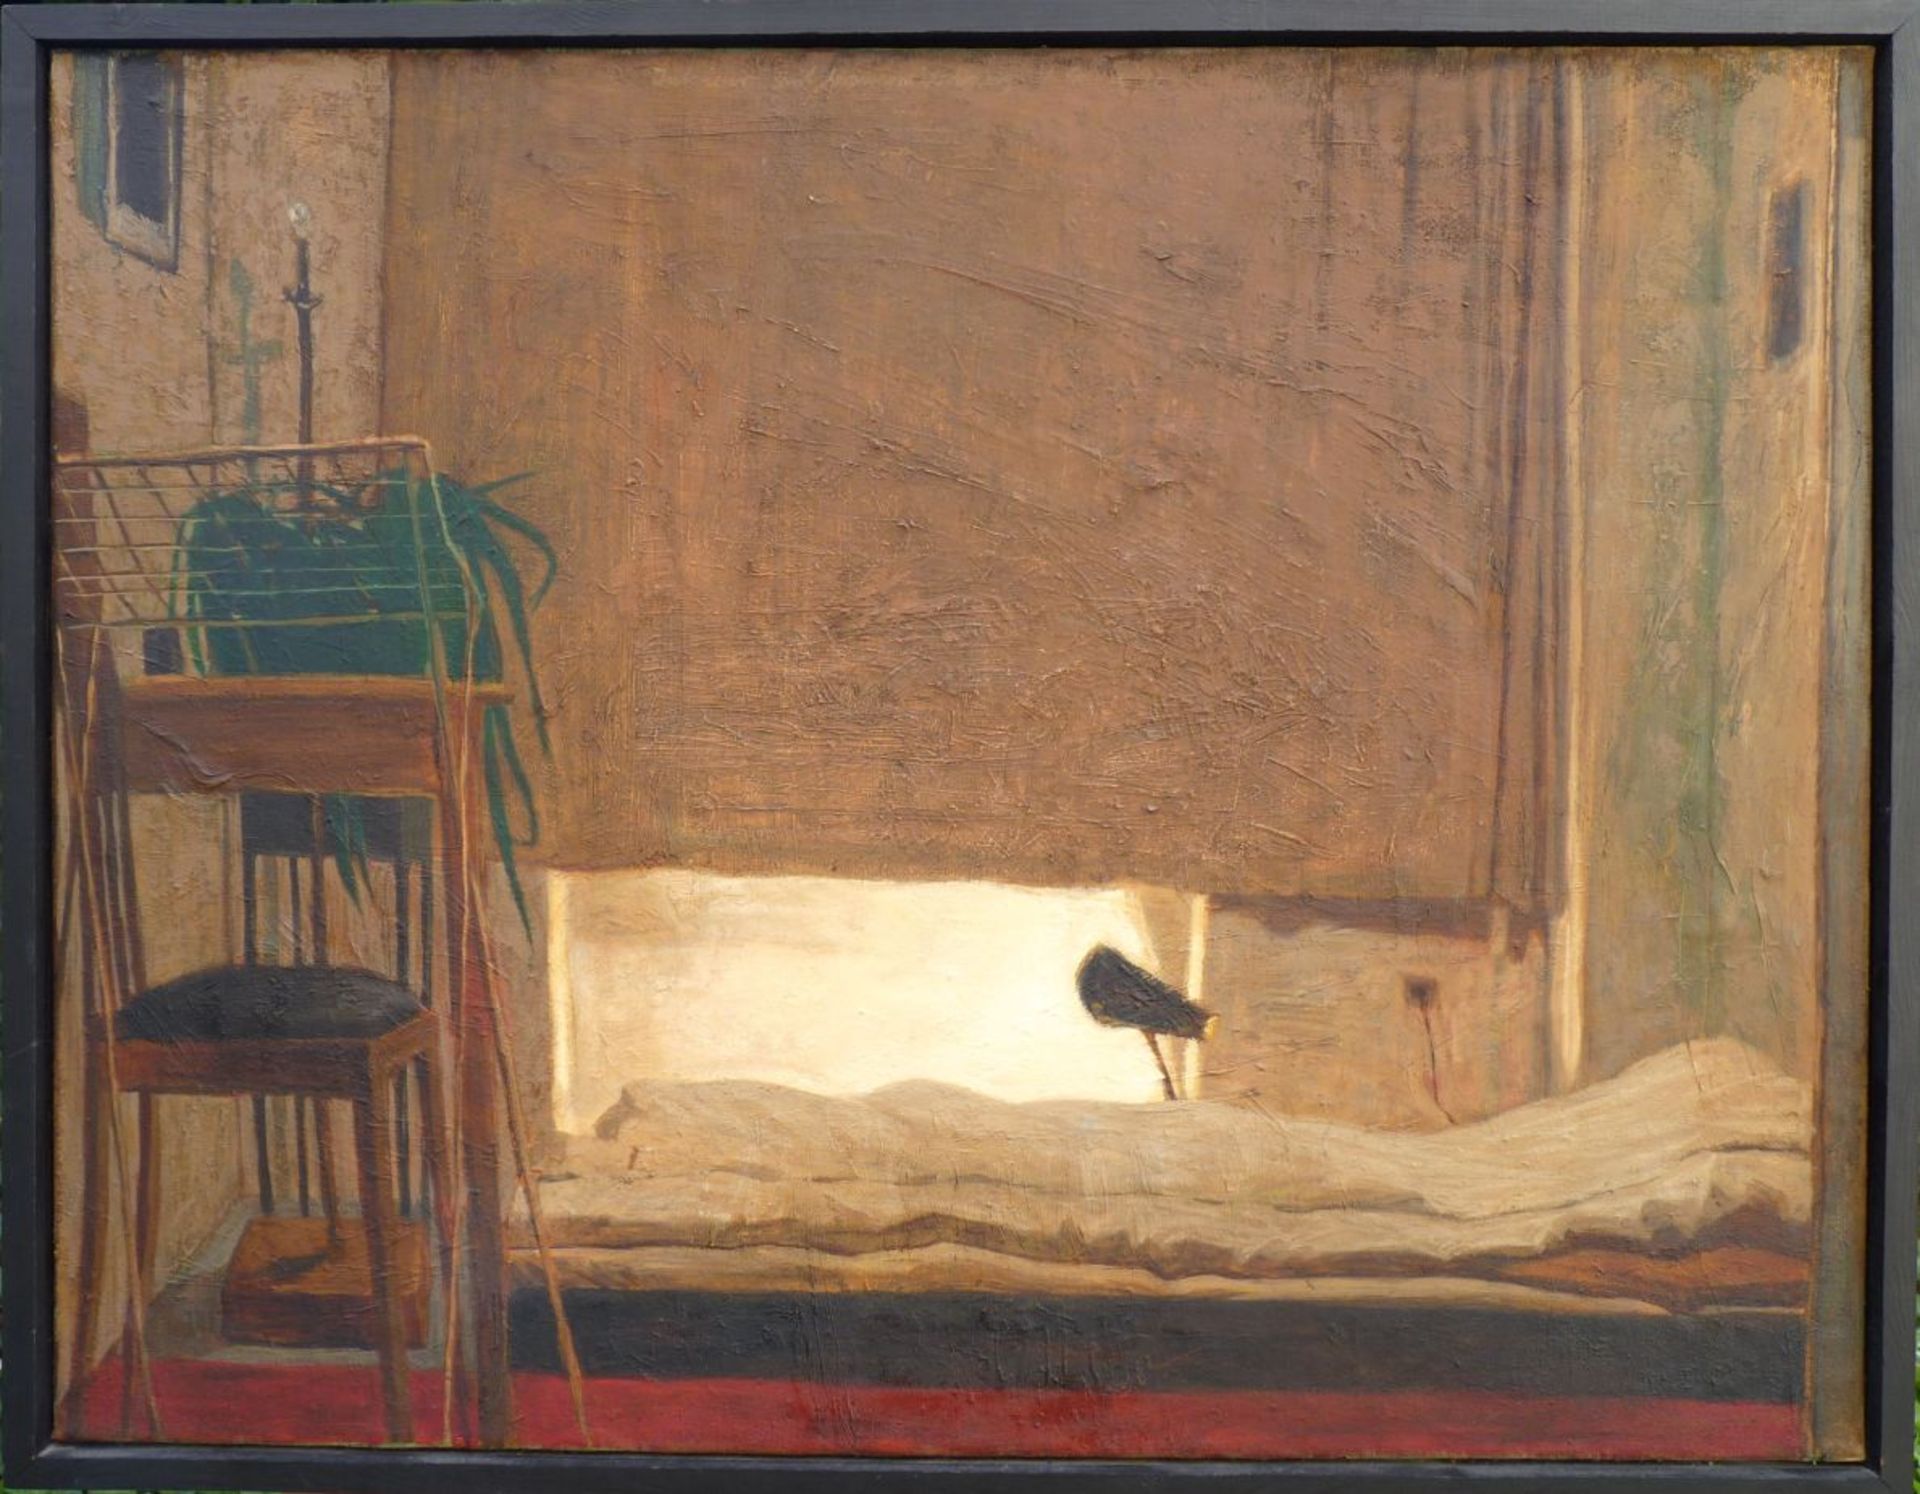 KRAUSE, AXEL: "Interieur mit braunem Vorhang", 1992